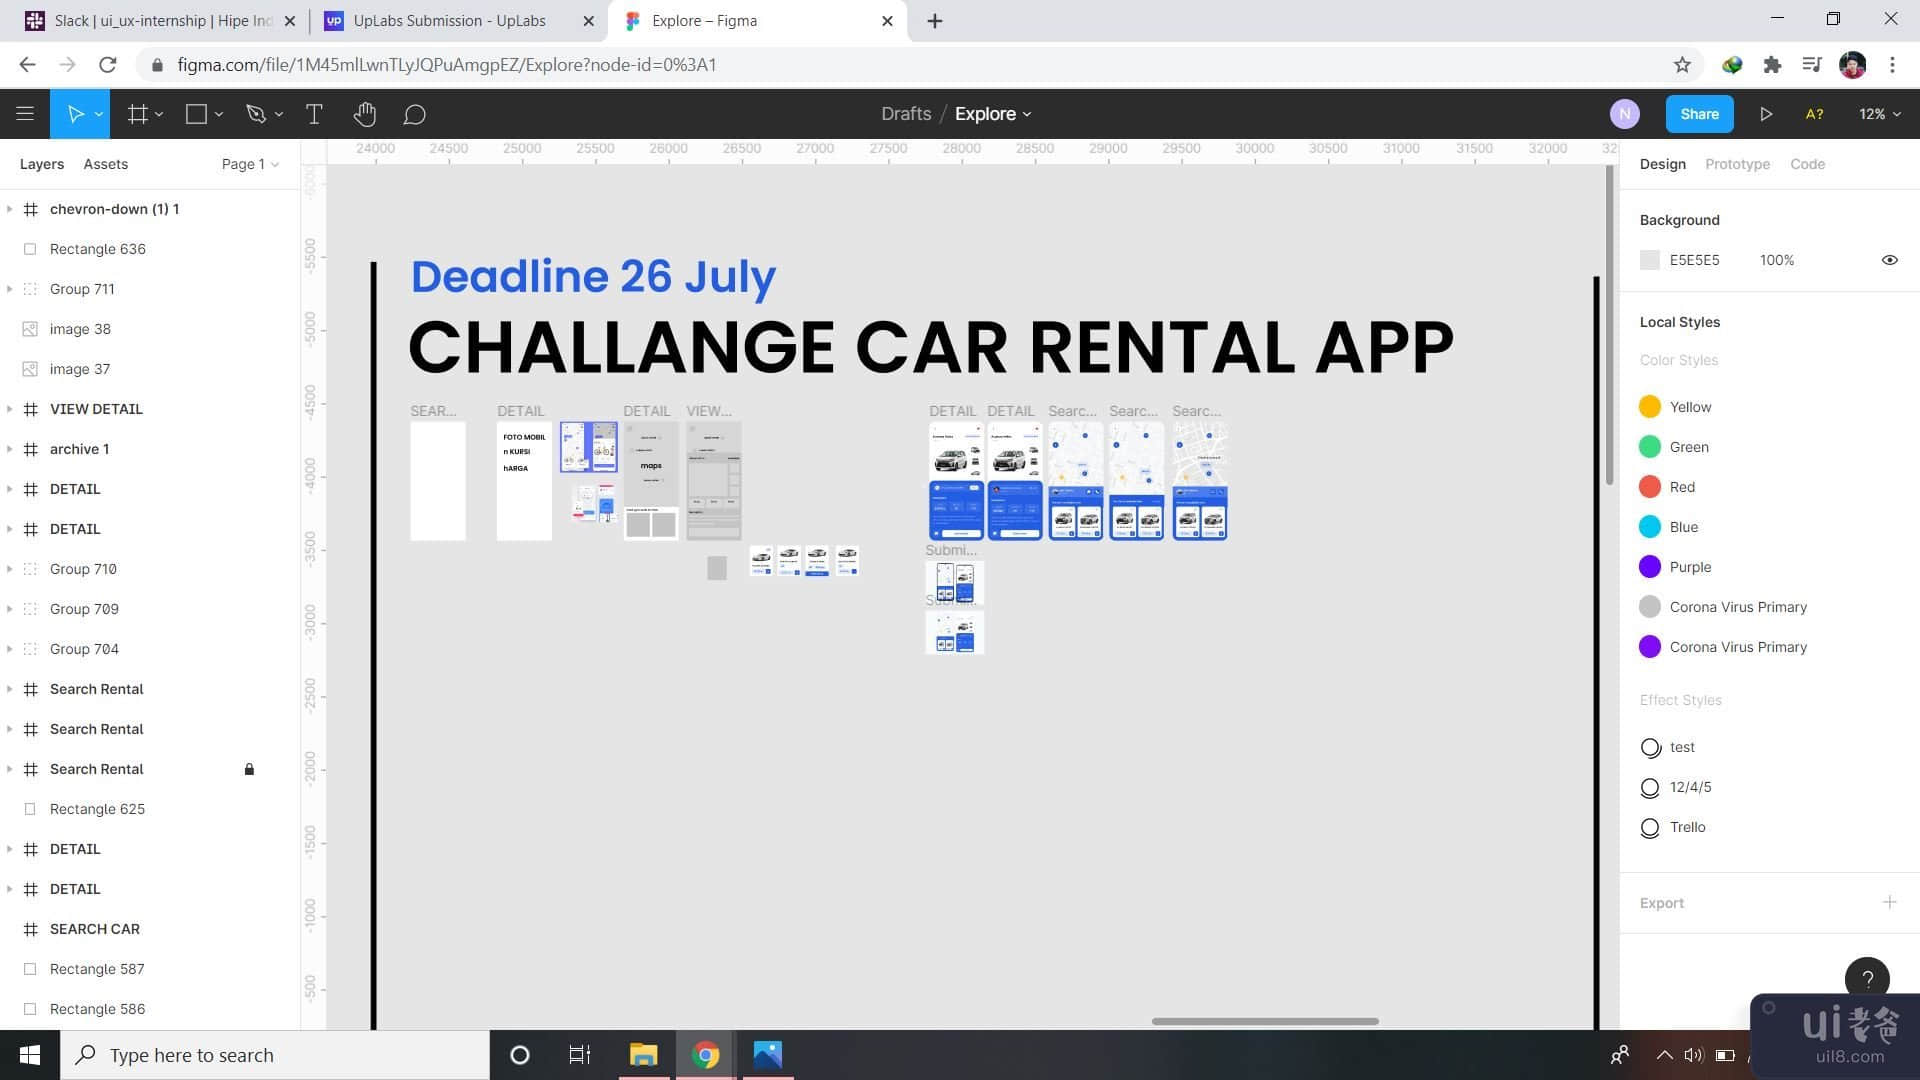 租车应用程序 - Uplabs 挑战(Rental Car App - Uplabs Challanges)插图